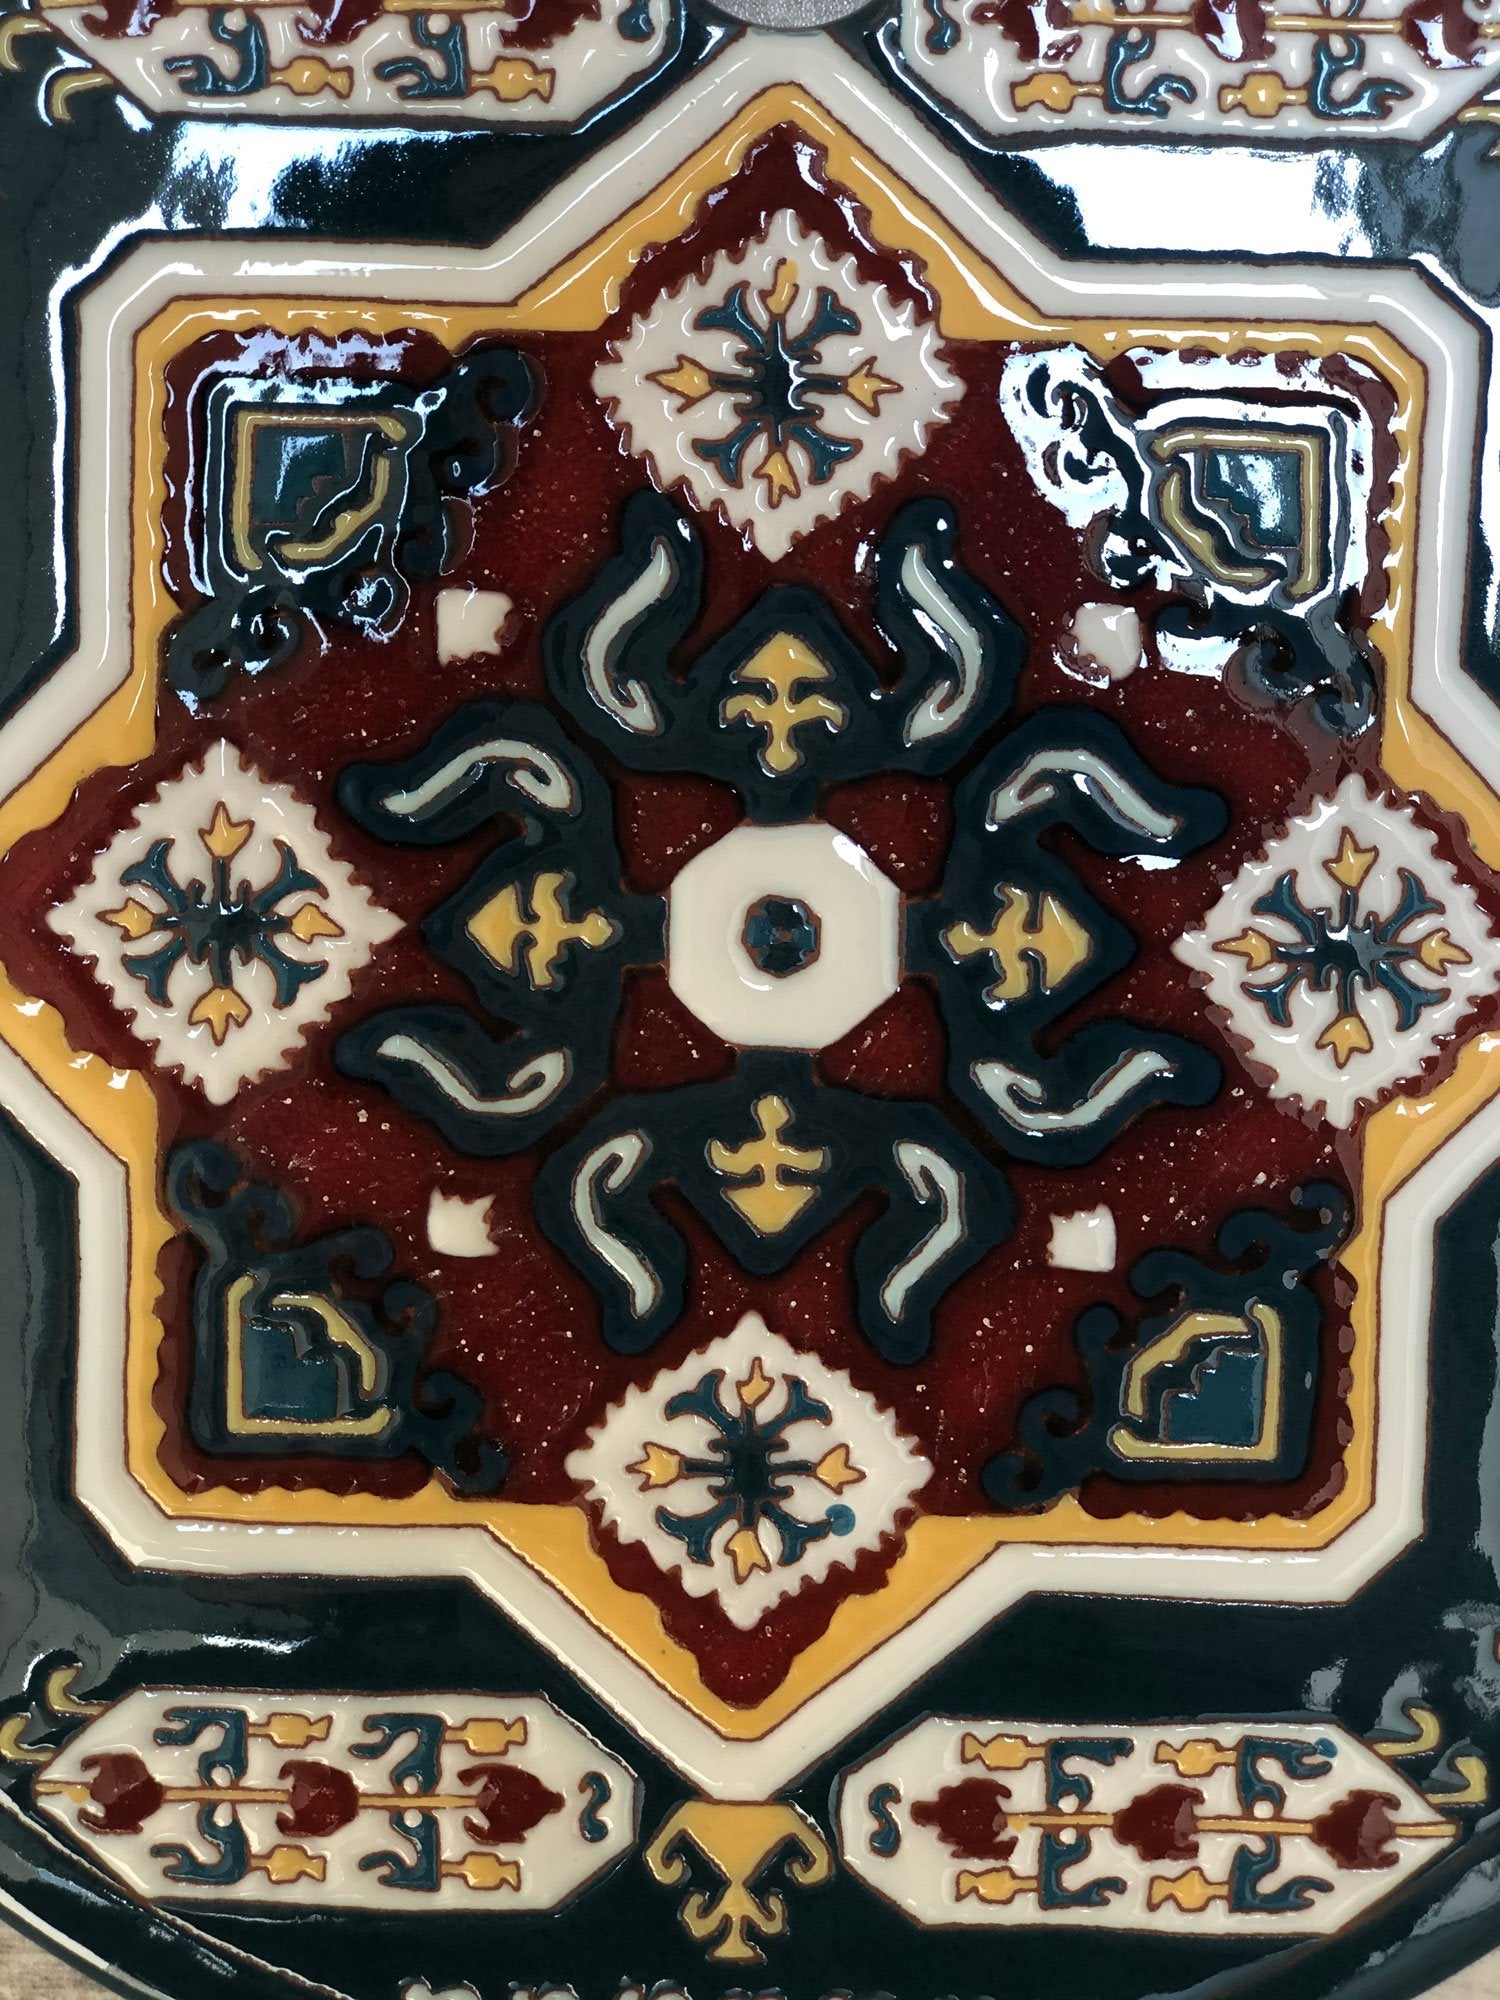 Armenian Carpet - Lori Cheeseboard